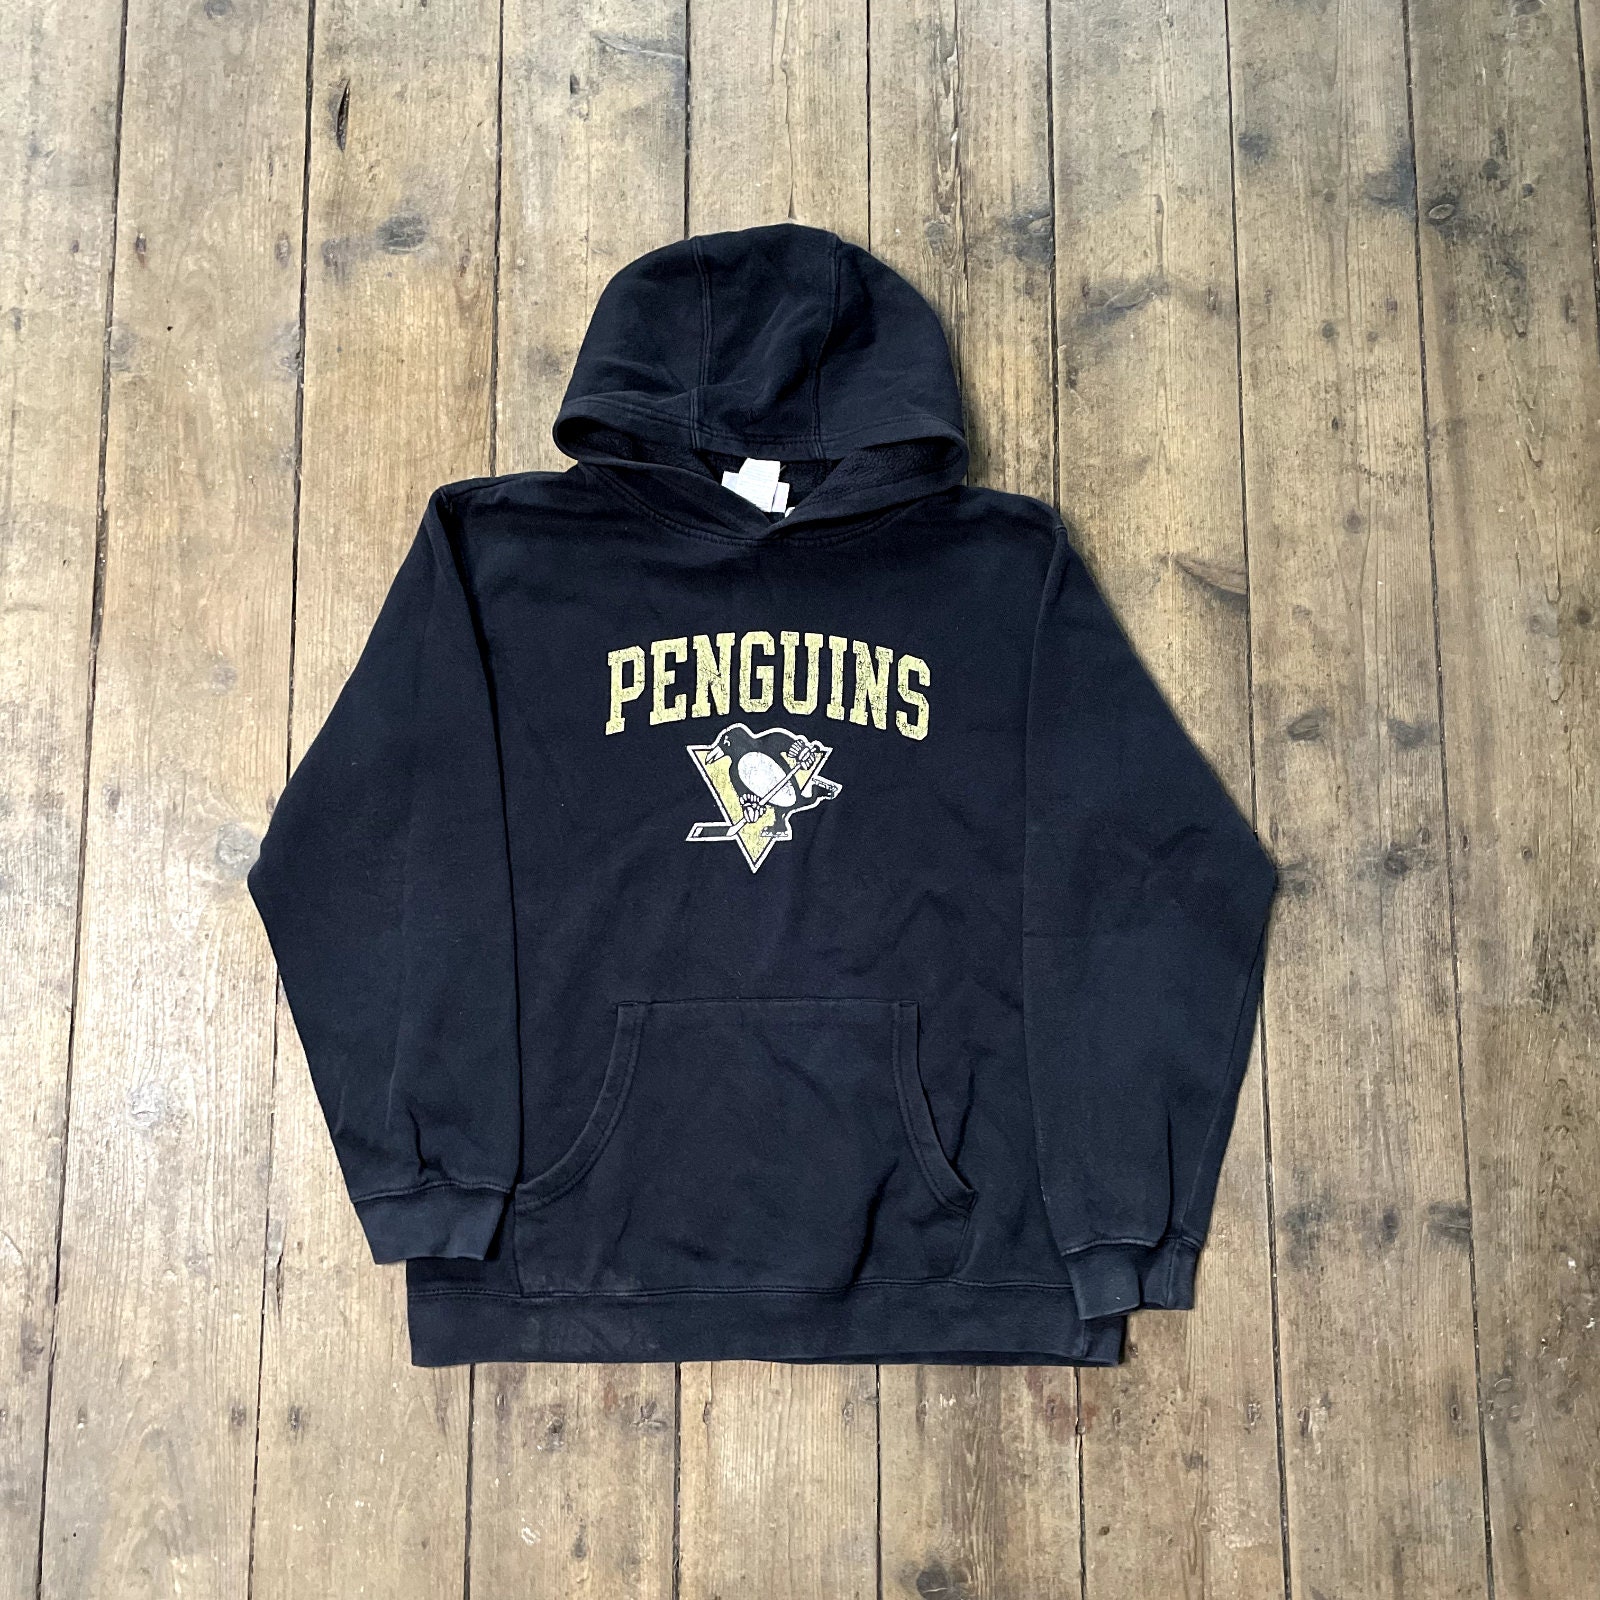 Pittsburgh Penguins Hoodie Mens Small Sweatshirt Sweater Black